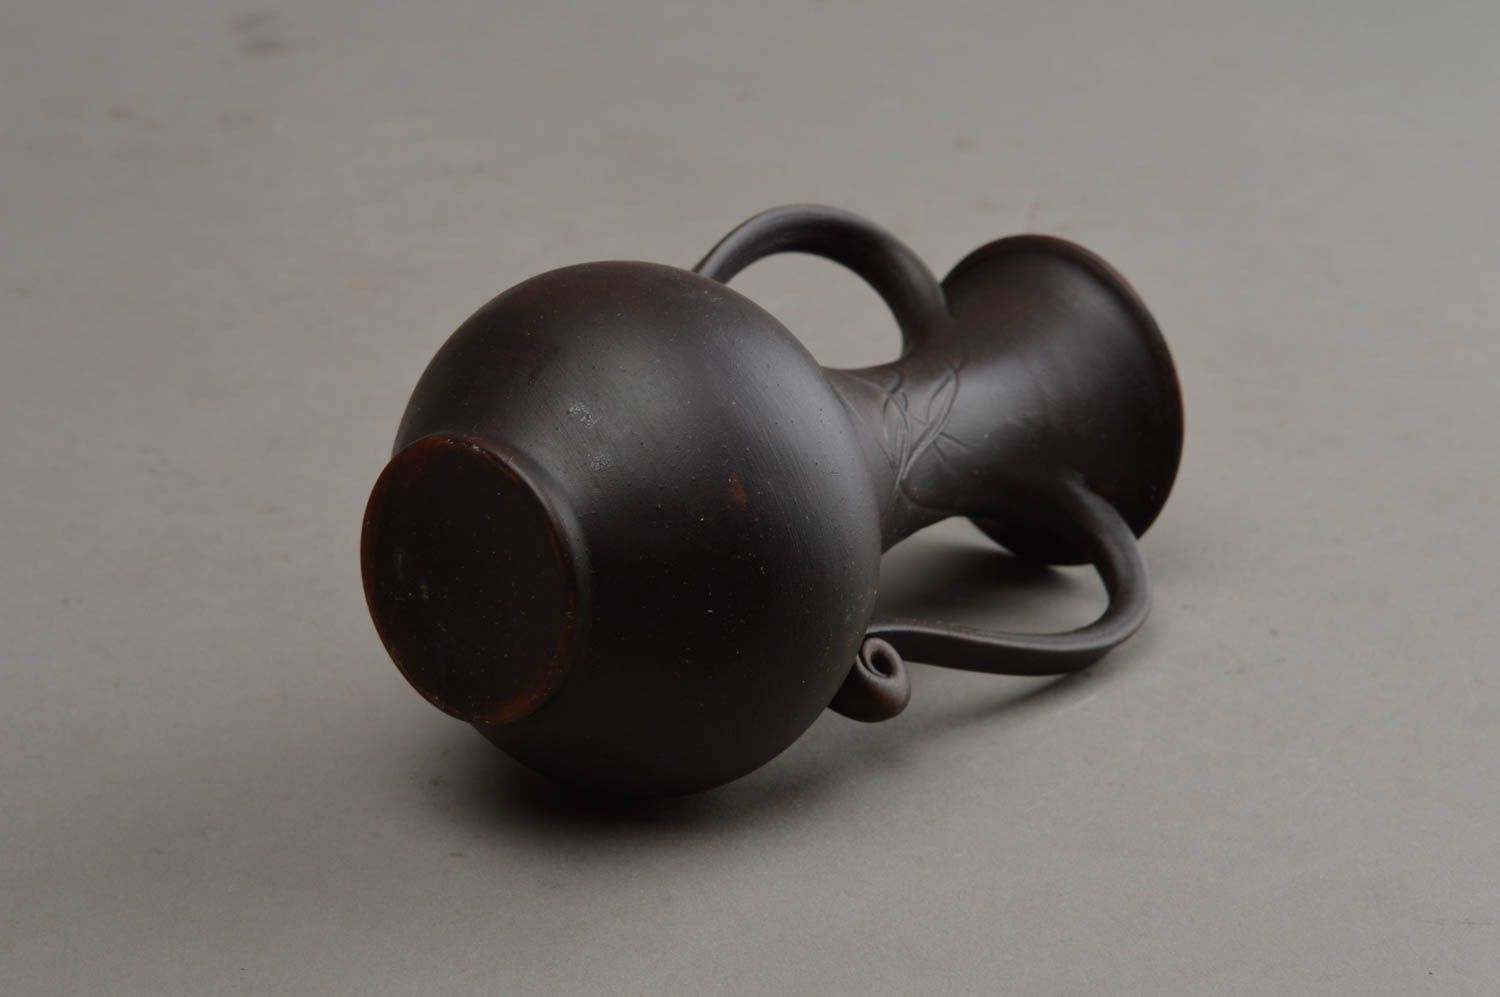 Jolie cruche en céramique avec anses miniature faite main décorative 100 ml photo 9